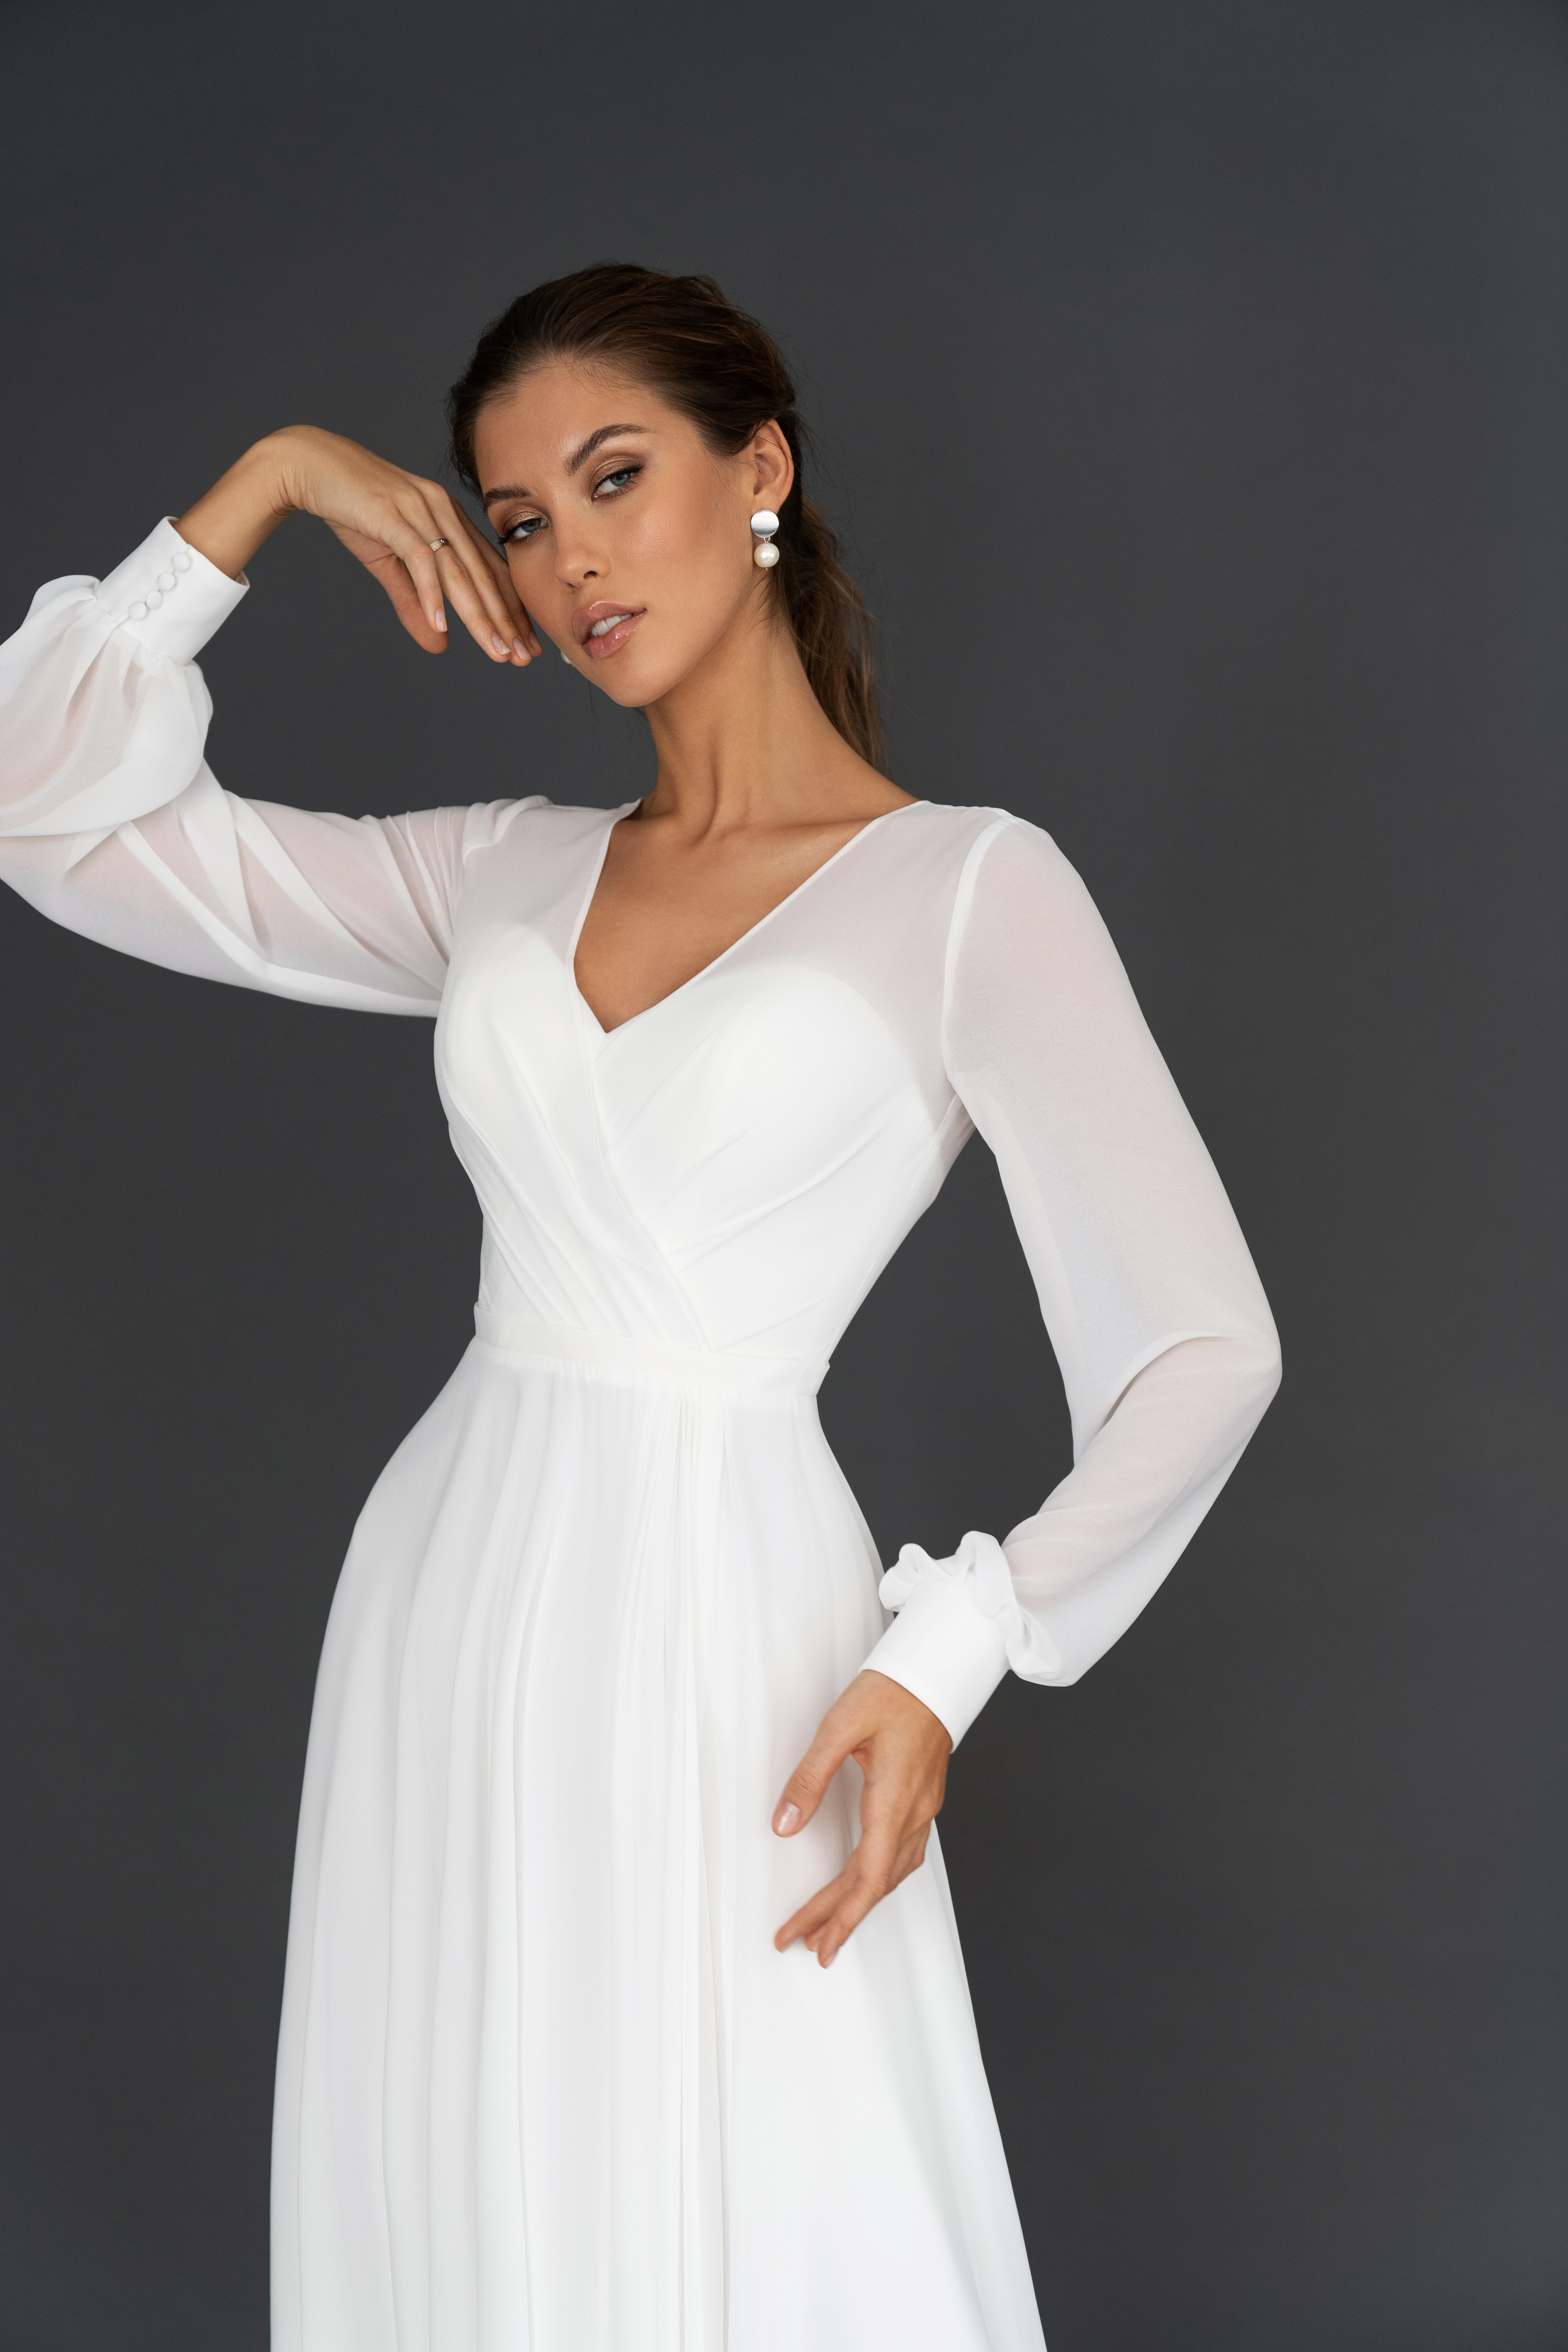 Свадебное платье «Осфадэль миди» Марта — купить в Казани платье Осфадэль из коллекции 2021 года